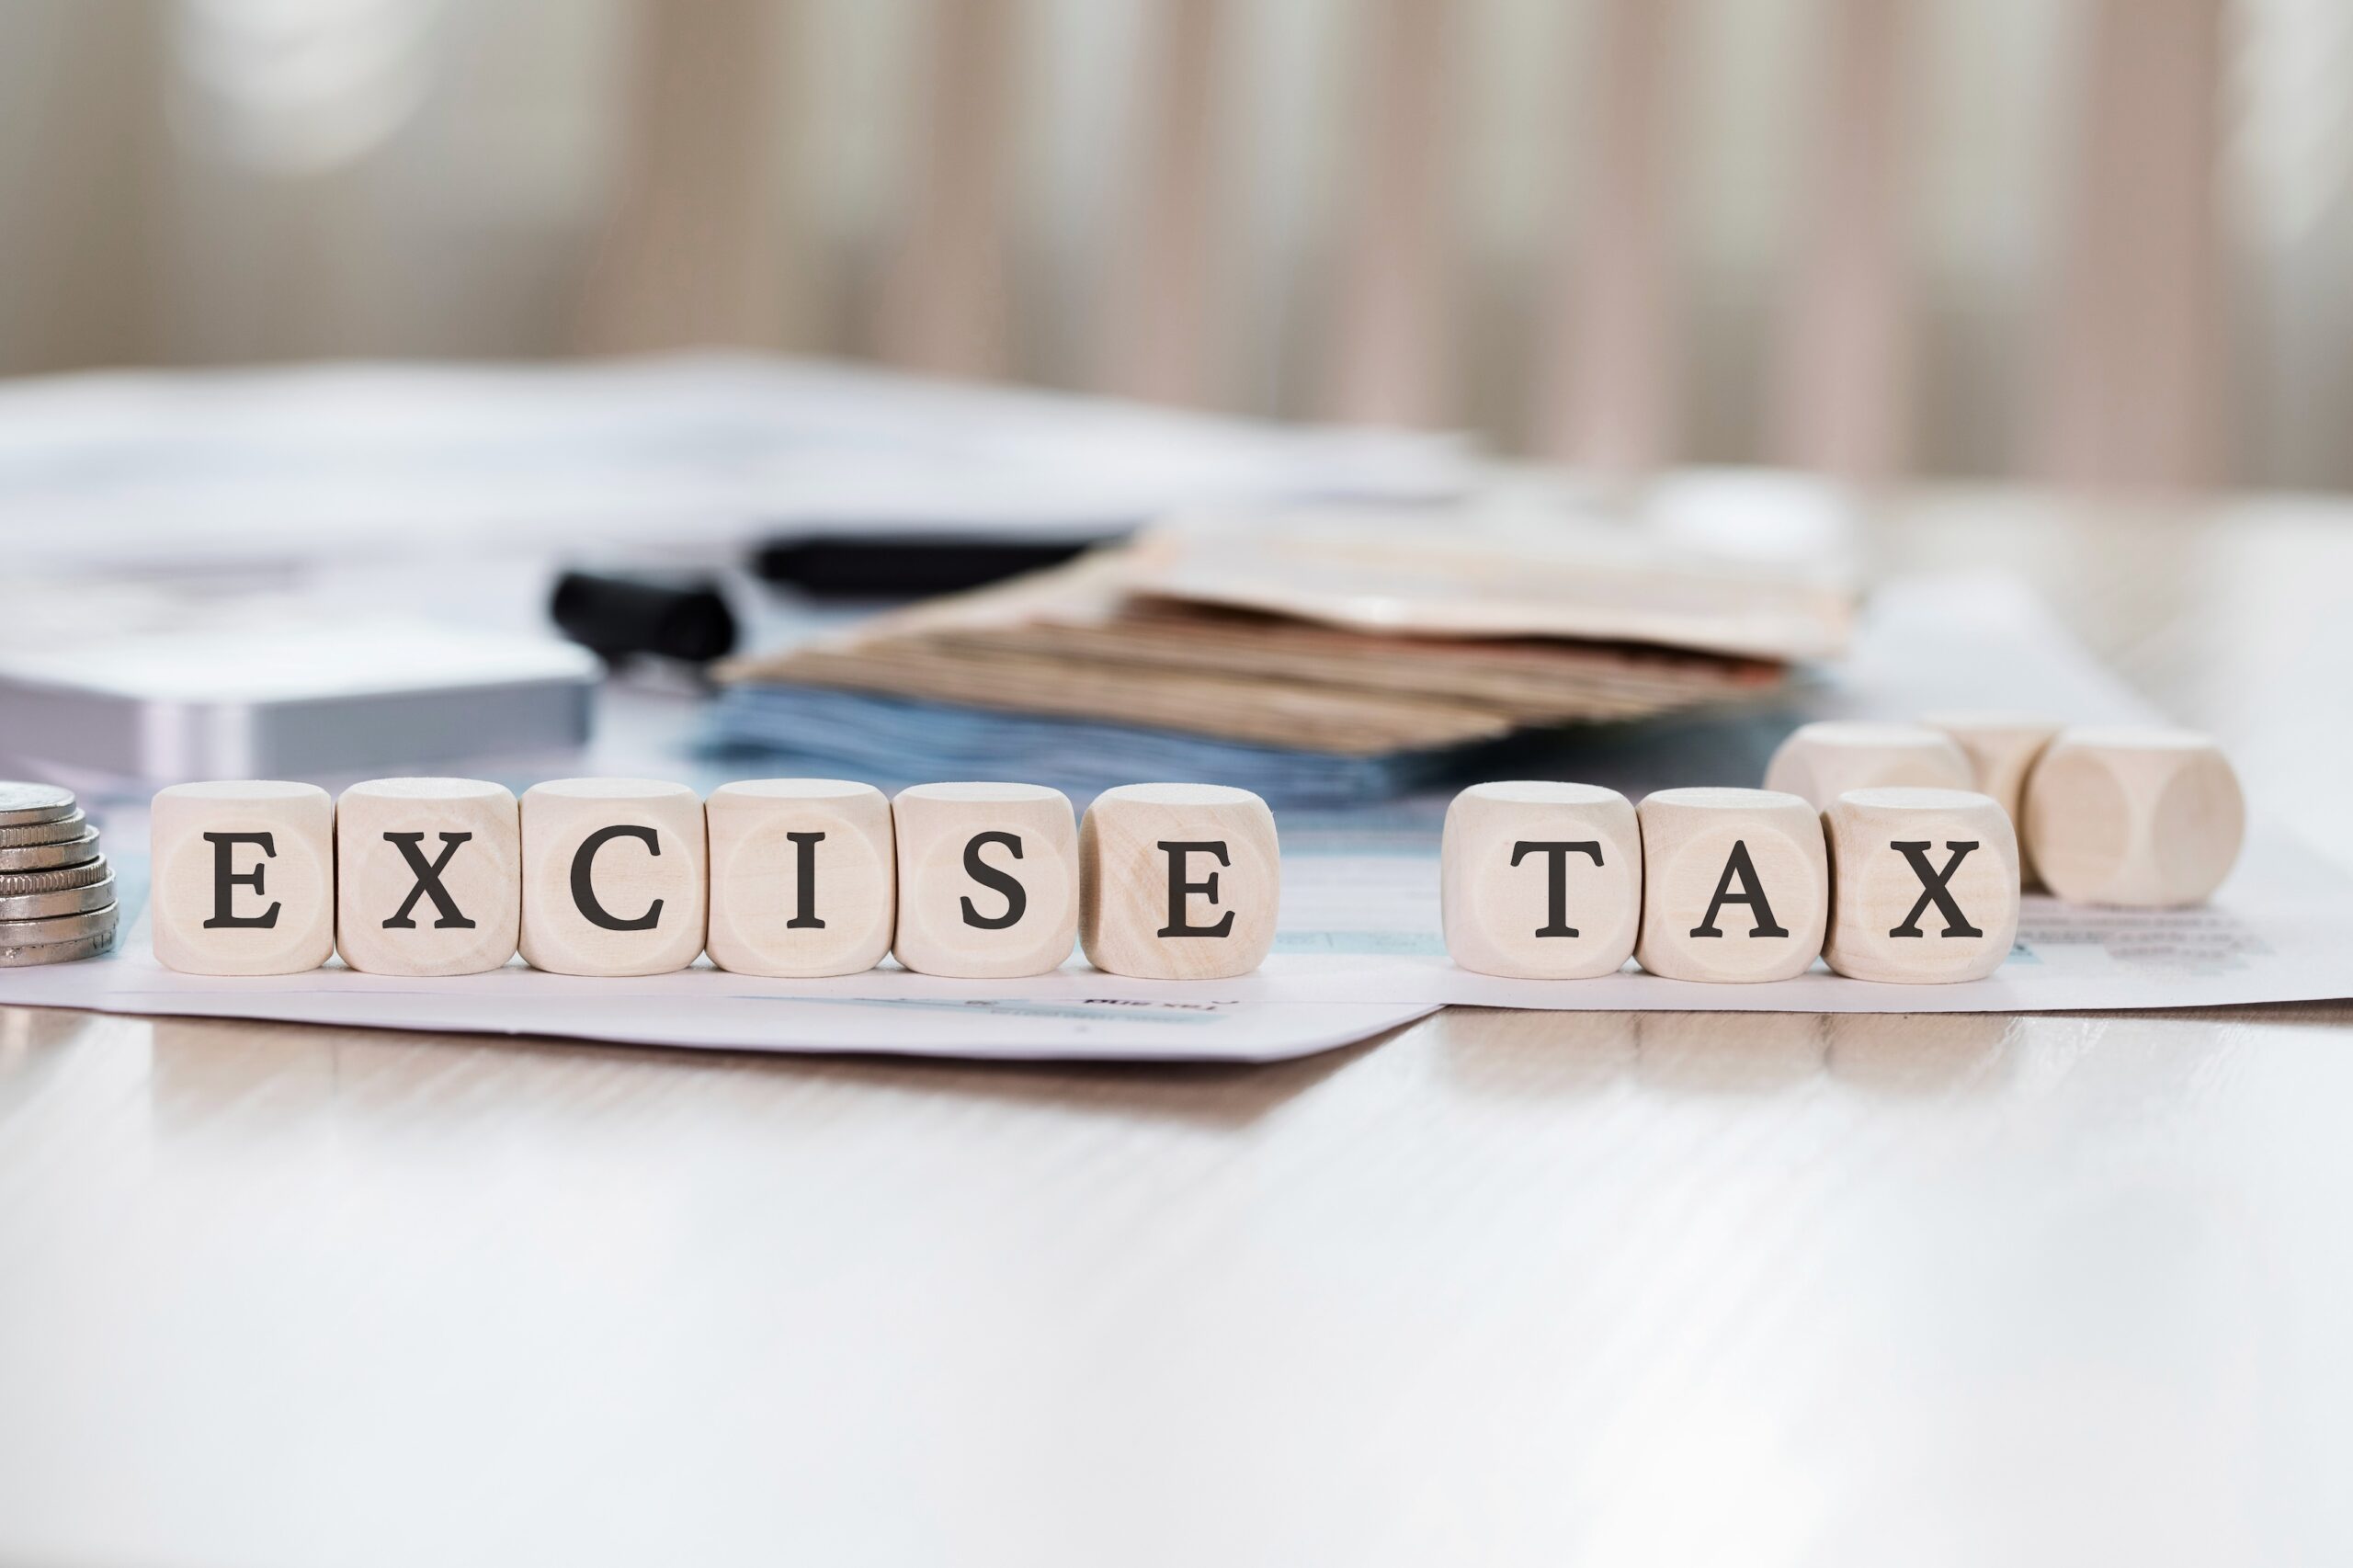 UAE Excise Tax